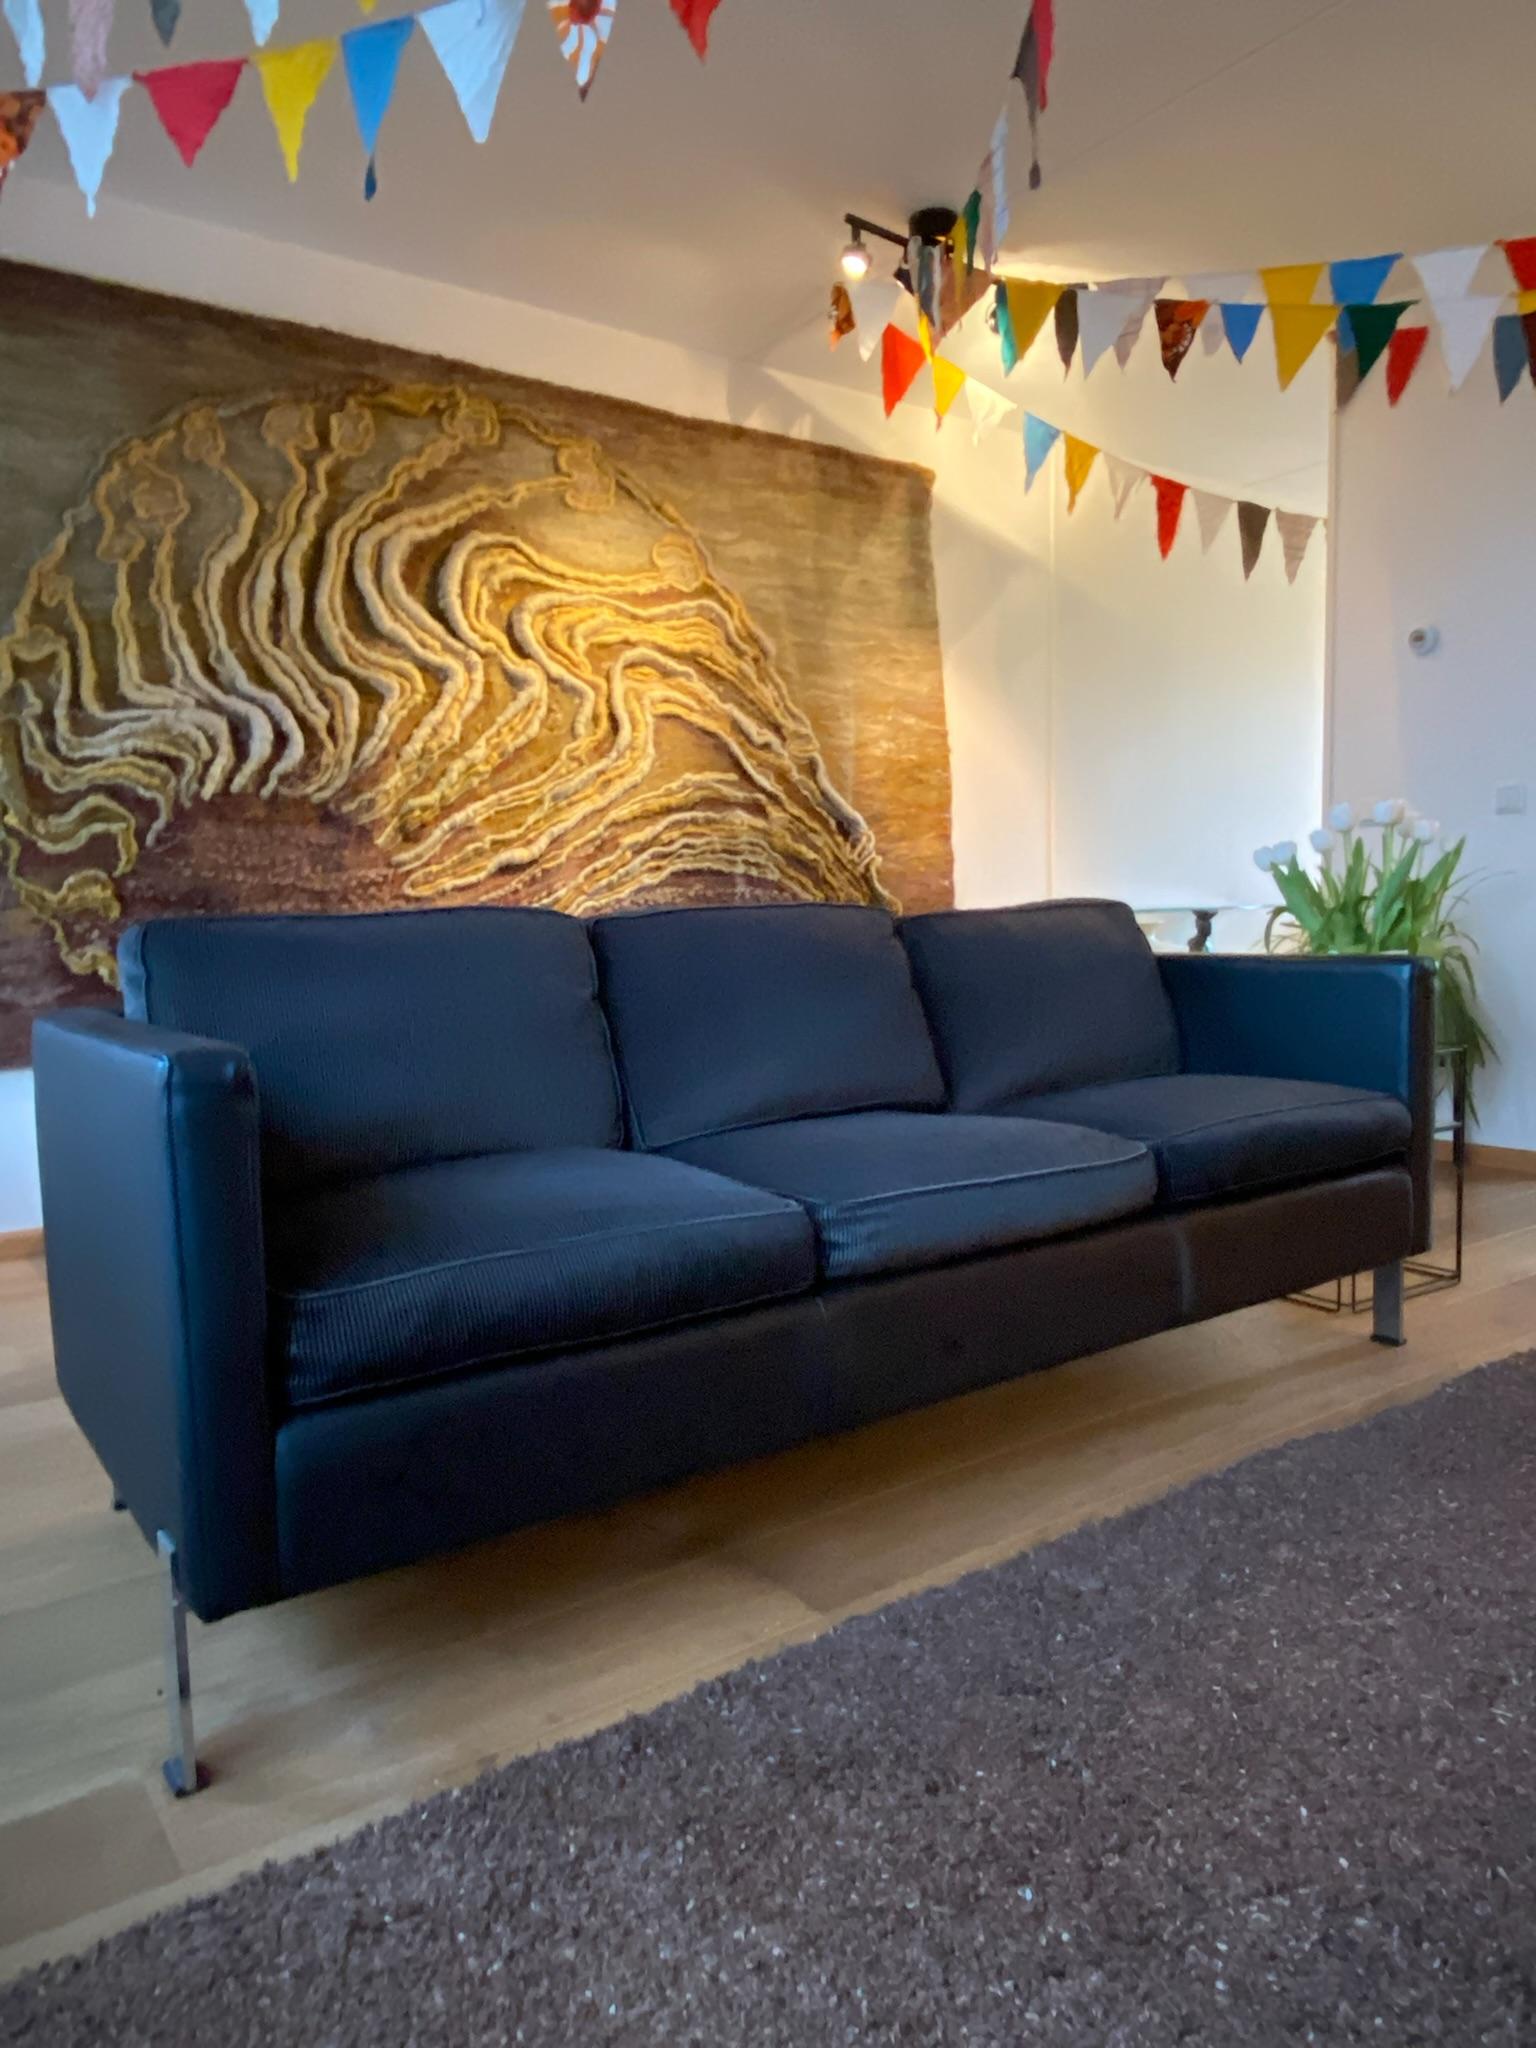 Seltenes und exklusives 3-Sitzer-Sofa, Design von Robert Haussmann für De Sede Schweiz ca. 1970er-1980er Jahre.
Das Sofa hat ein schwarzes Ledergestell mit verchromten Beinen und einen Bezug aus schwarzem und grauem Stoff. Das Sofa befindet sich in